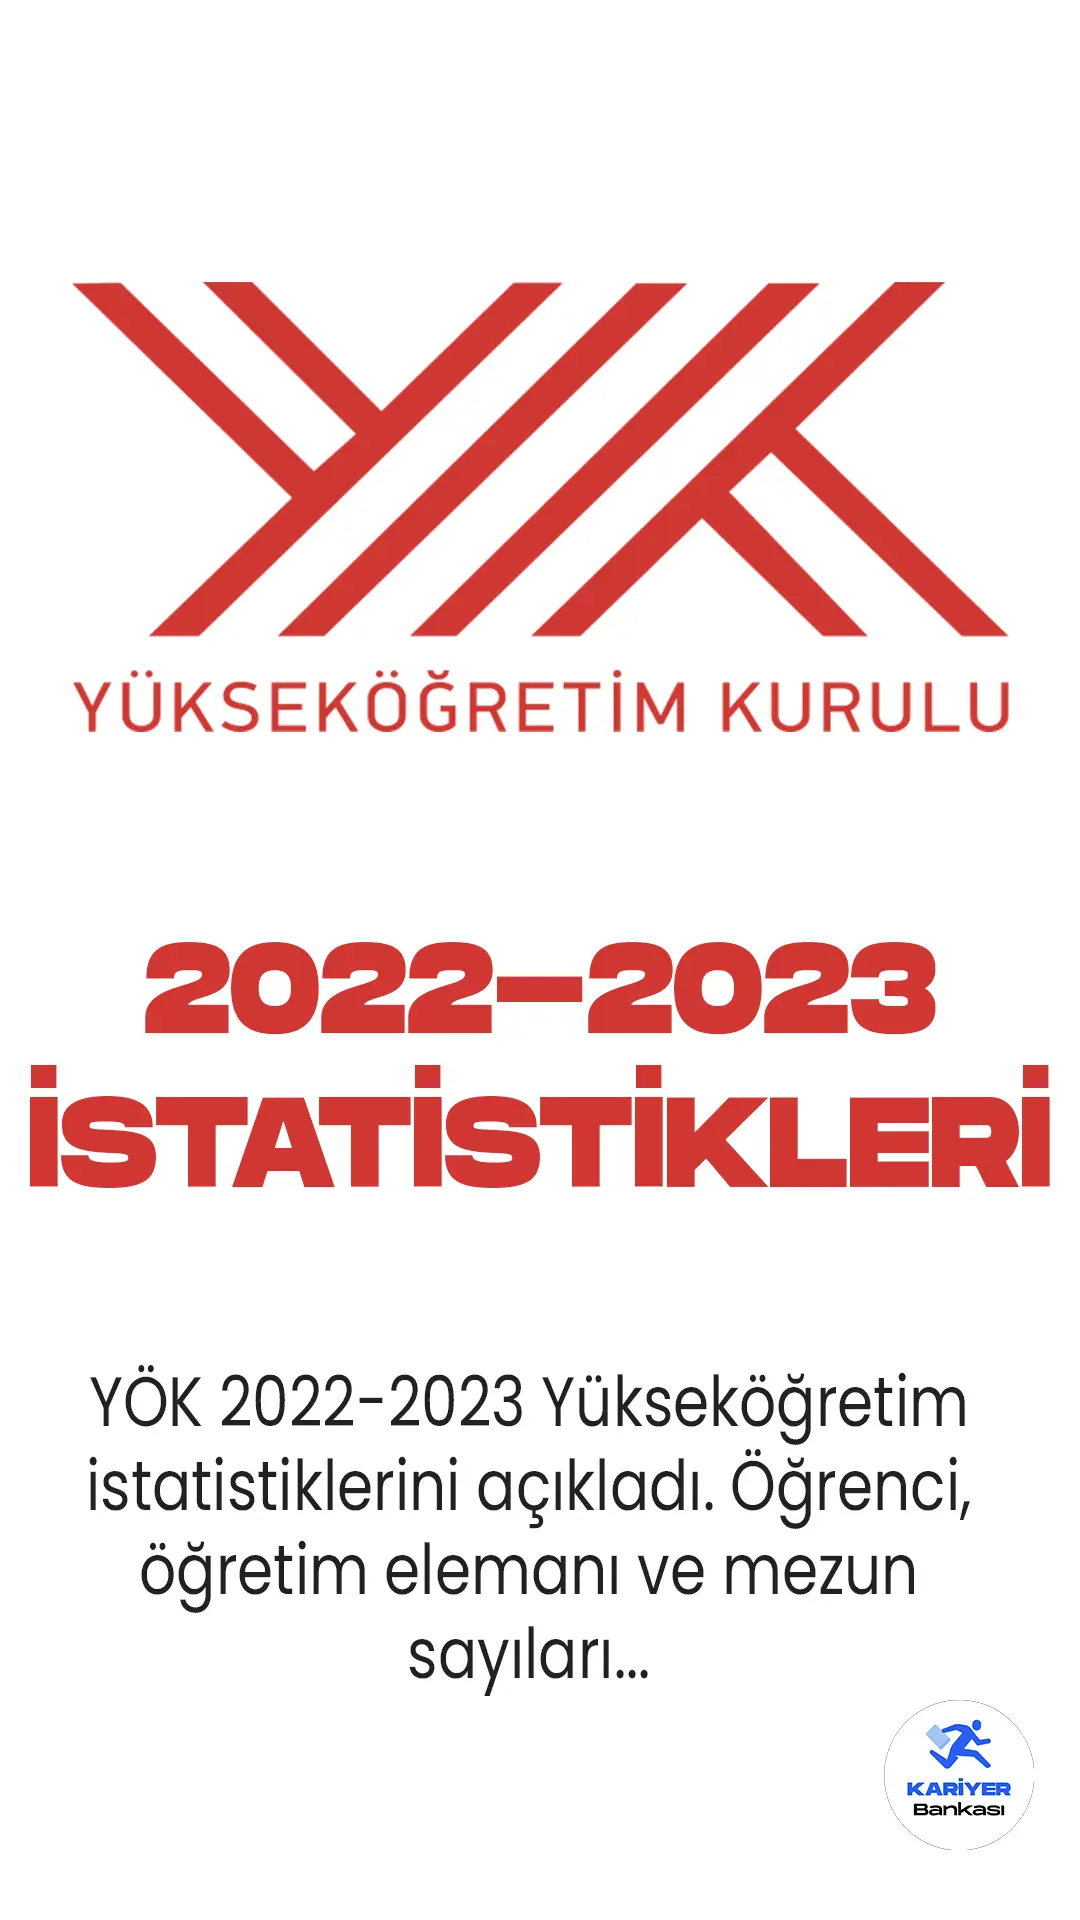 YÖK 2022-2023 Yükseköğretim istatistiklerini açıkladı. Öğrenci, öğretim elemanı ve mezun sayıları...